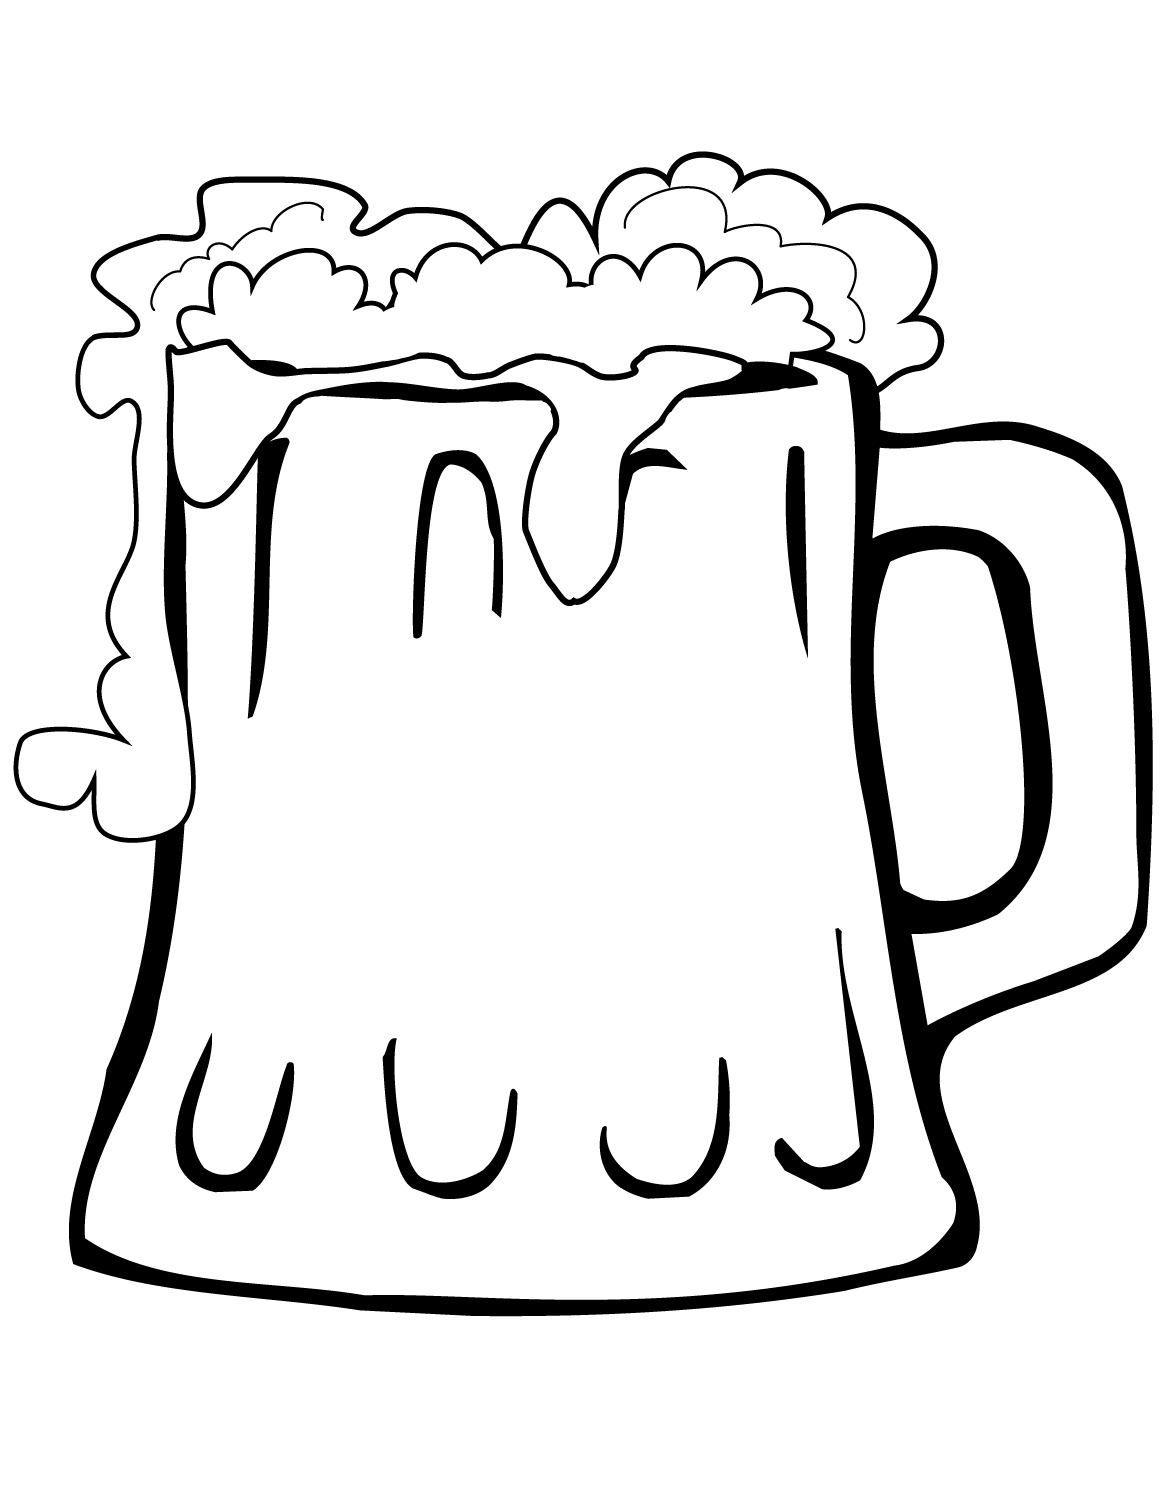 Tranh tô màu cái cốc uống bia